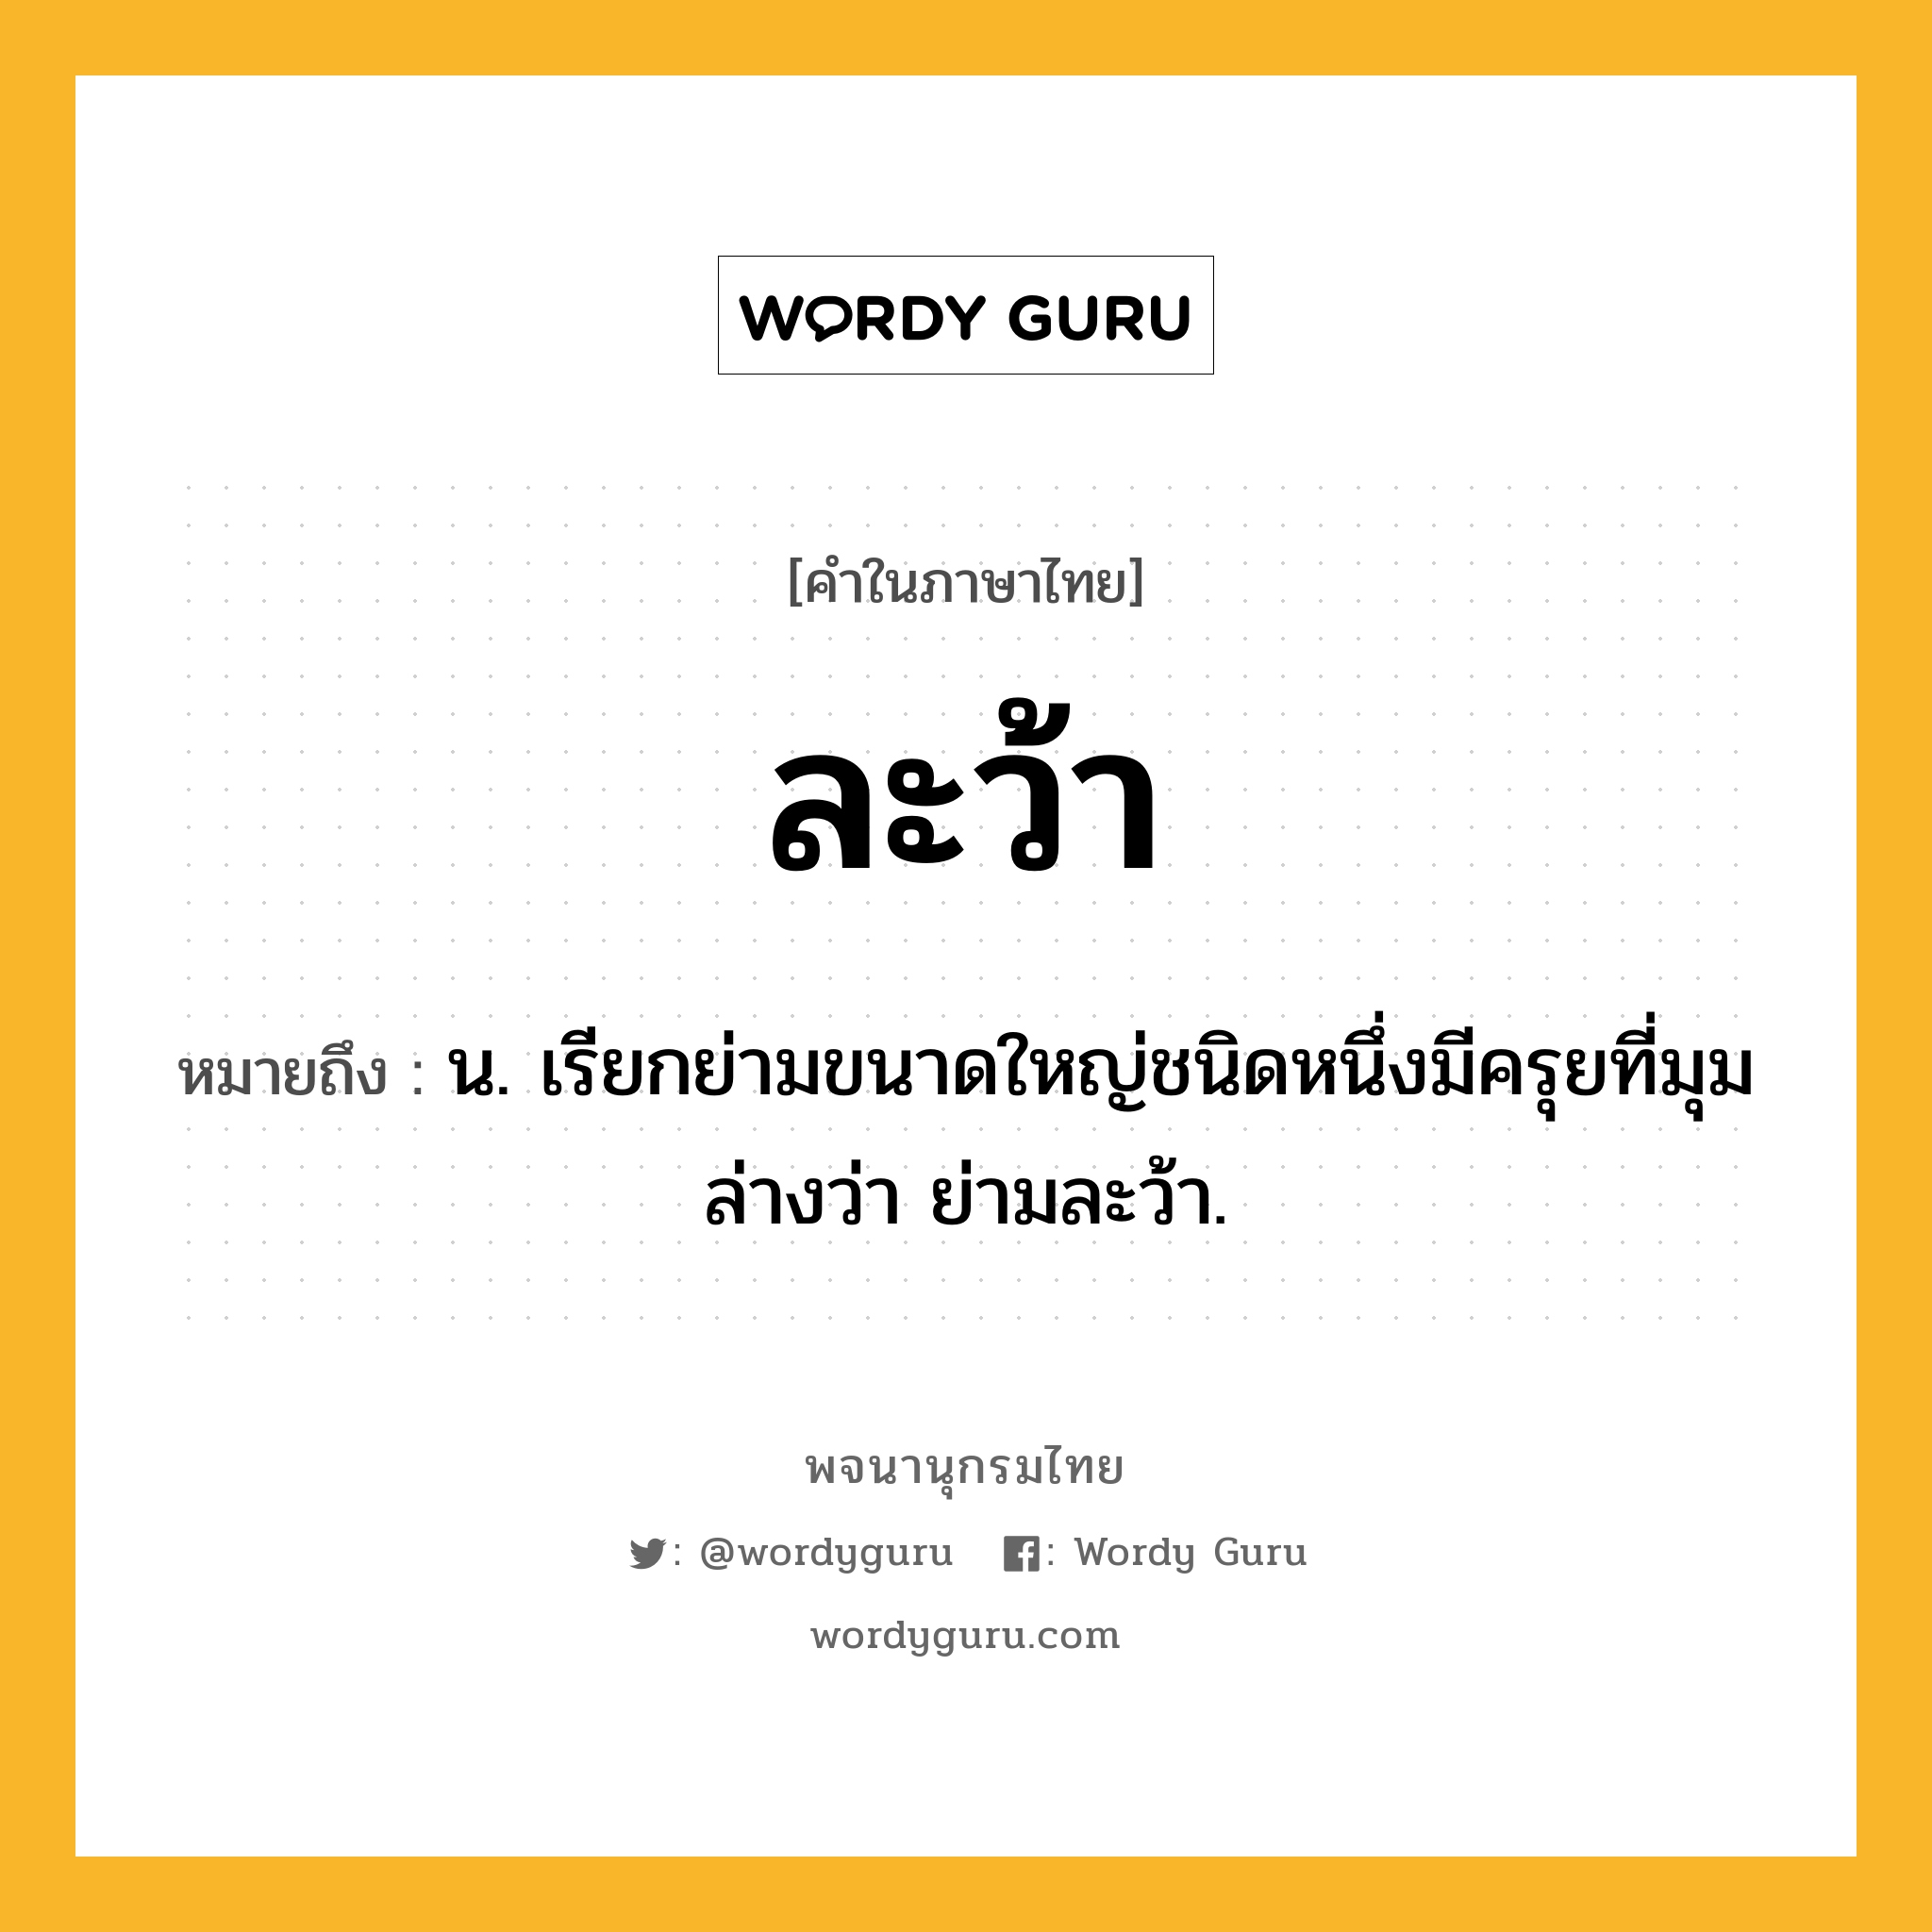 ละว้า ความหมาย หมายถึงอะไร?, คำในภาษาไทย ละว้า หมายถึง น. เรียกย่ามขนาดใหญ่ชนิดหนึ่งมีครุยที่มุมล่างว่า ย่ามละว้า.